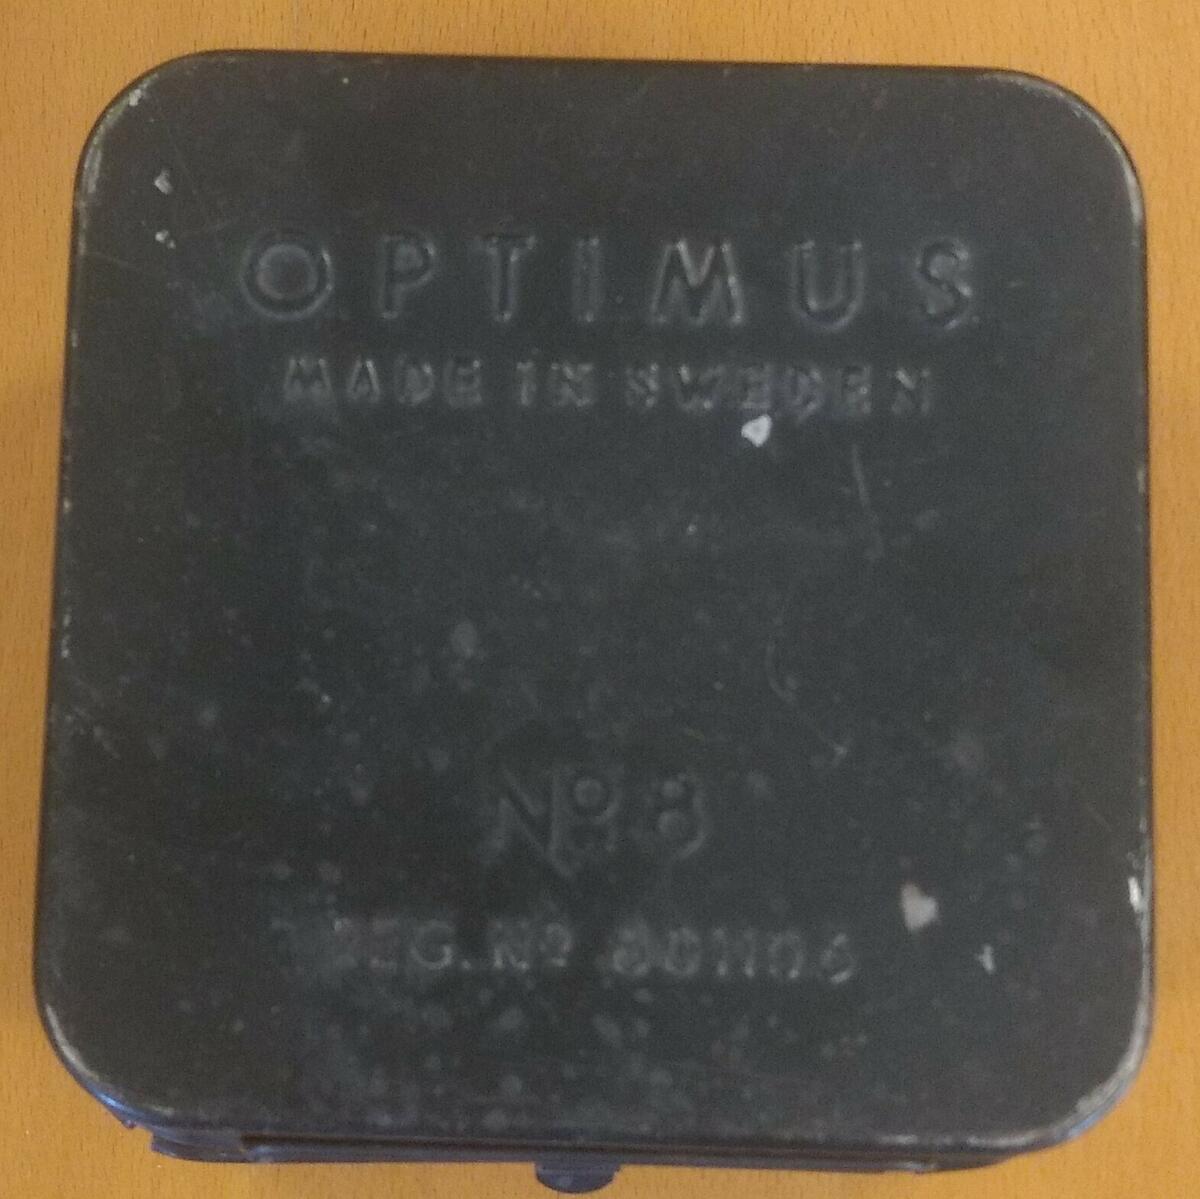 Spritkök. Optimus. Made in Sweden No 8, Reg no 801106. Gåva av Carina Elisabeth Hellsing, Söråker.